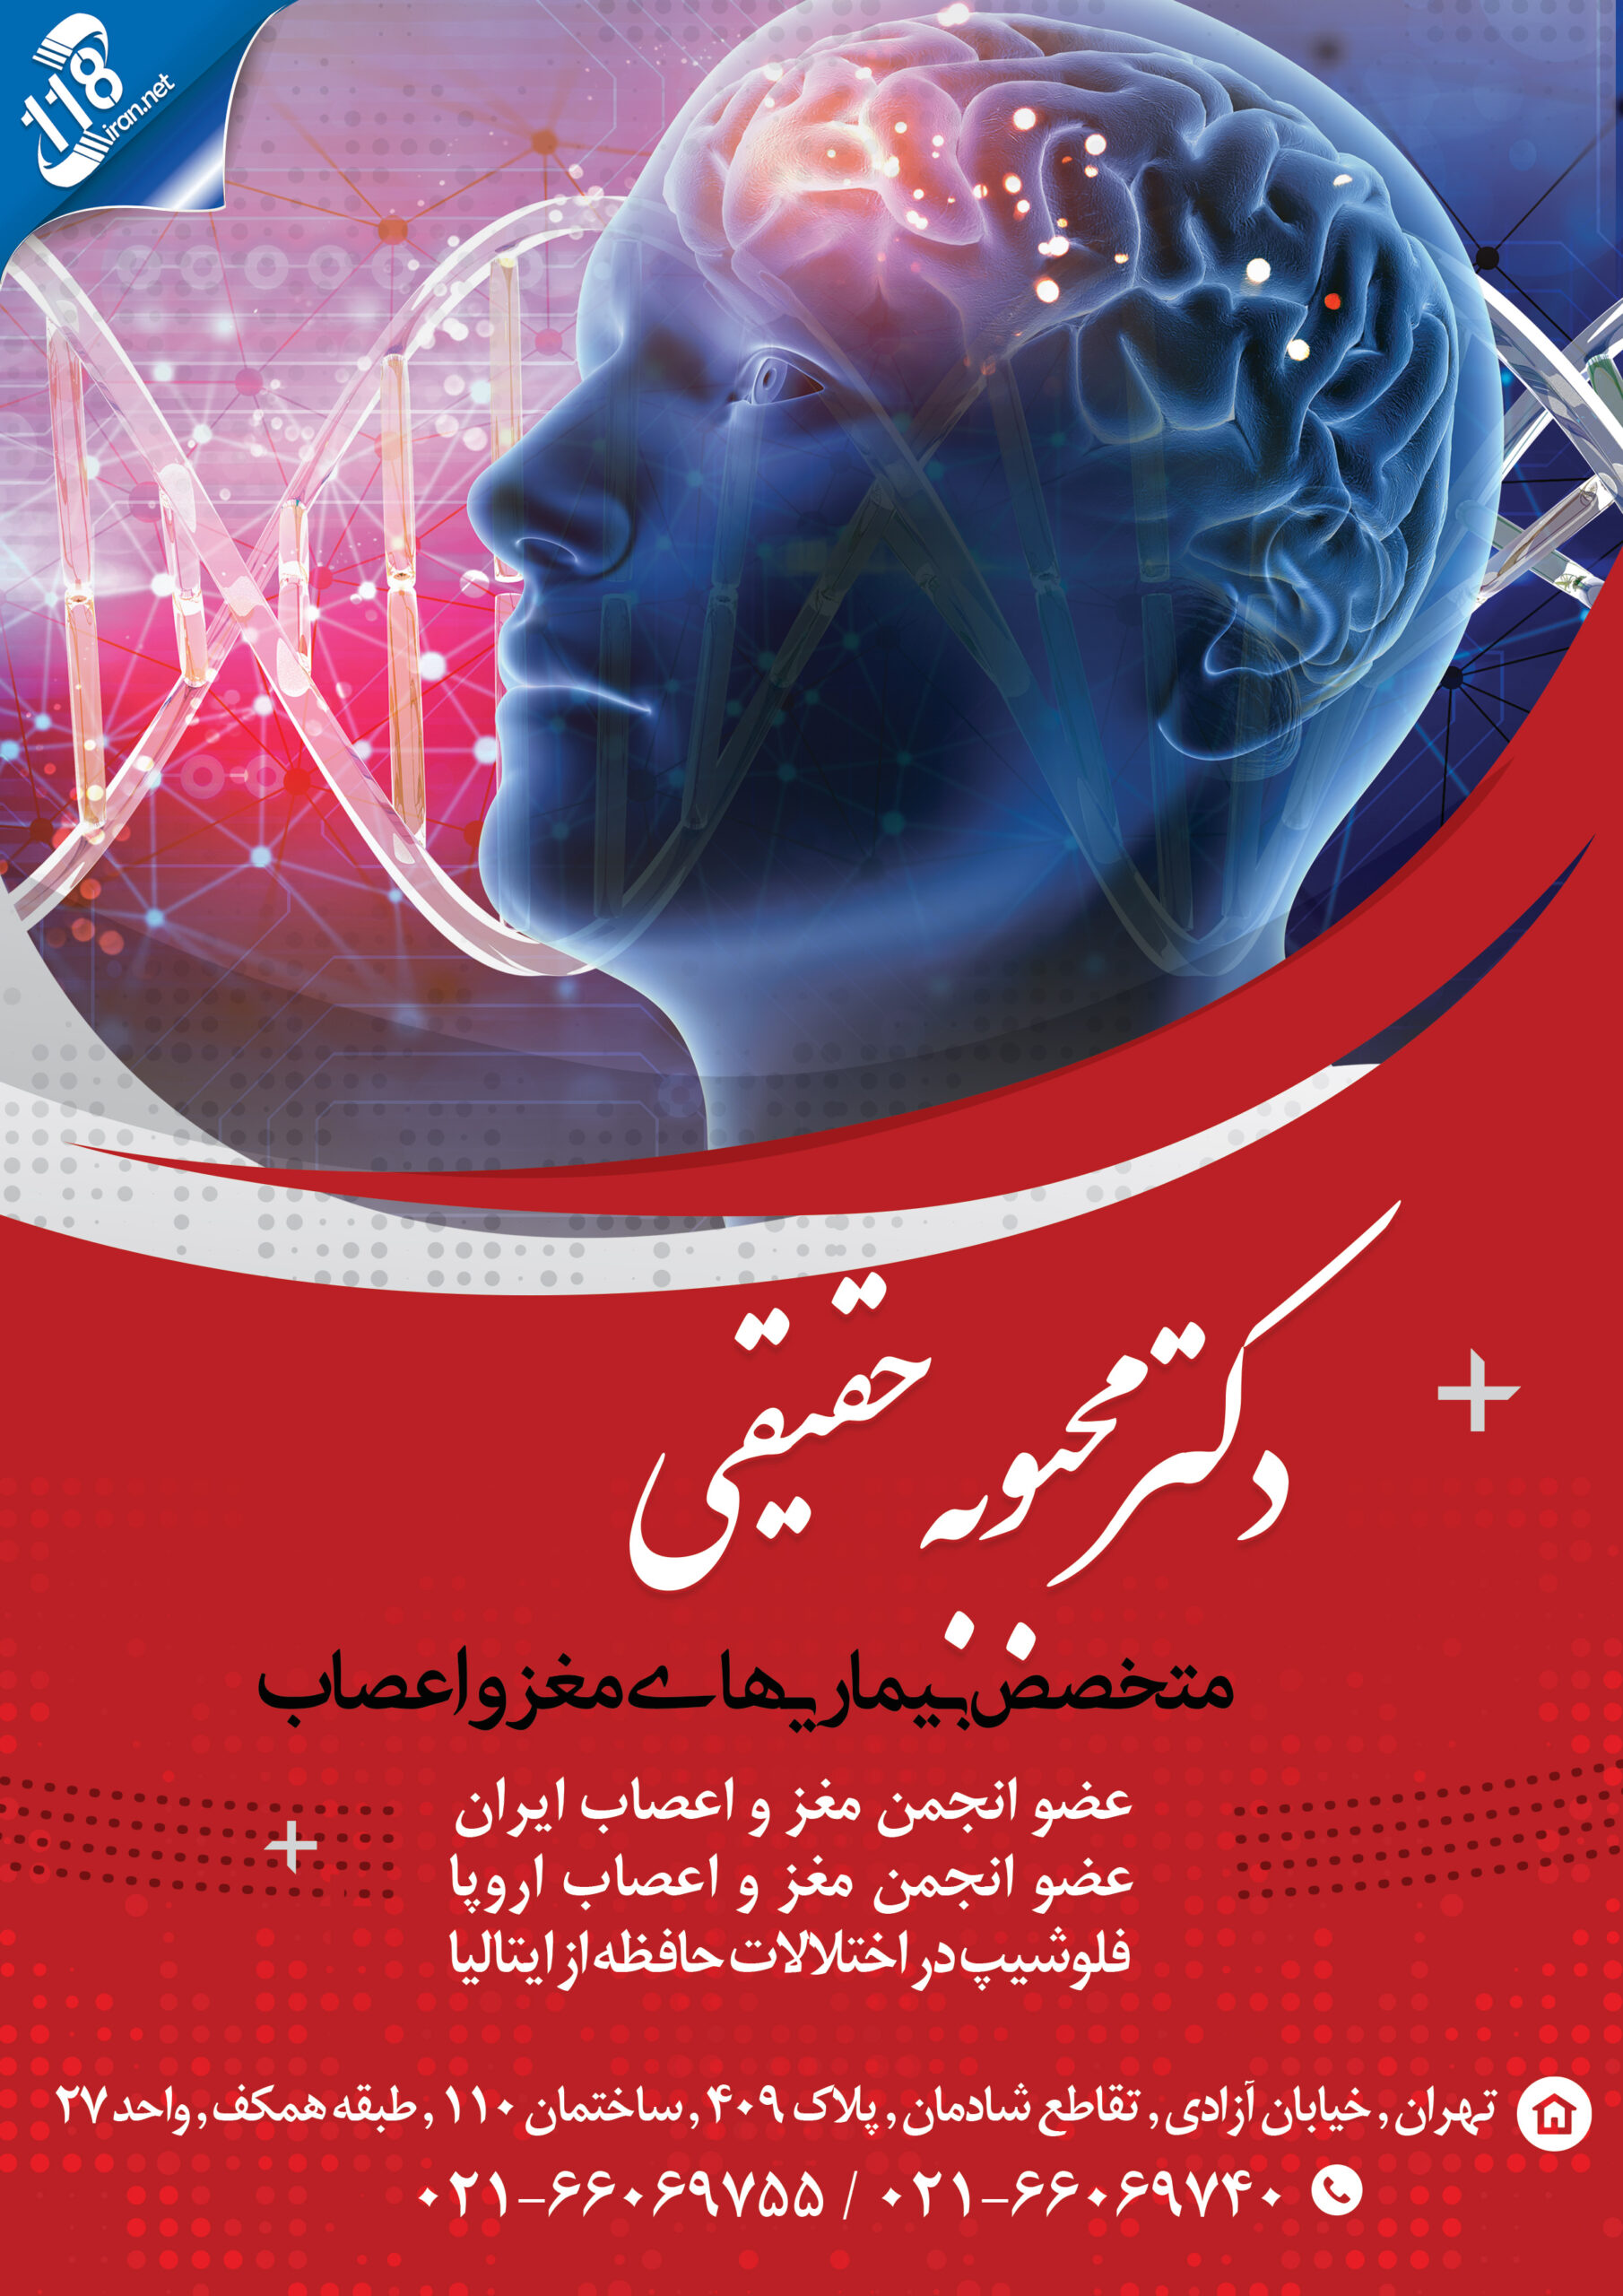  دکتر محبوبه حقیقی در تهران 